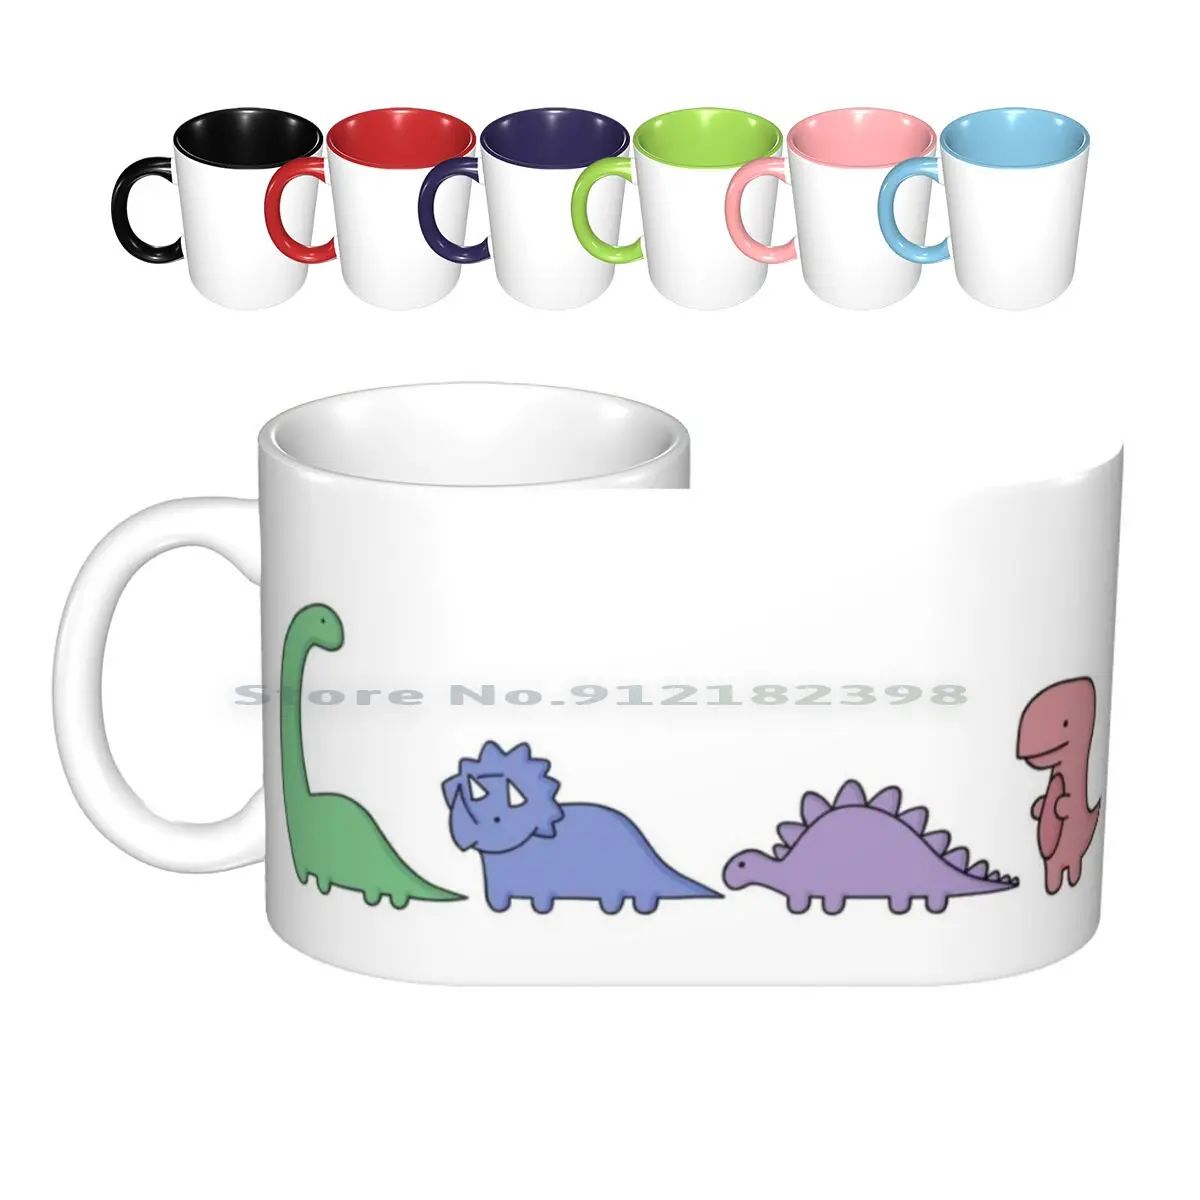 

Керамические кружки с динозаврами, кофейные чашки, кружка для чая с молоком, Брахиозавр, T-Рекс, стегозавр, Трицератопс, Дино, динозавры